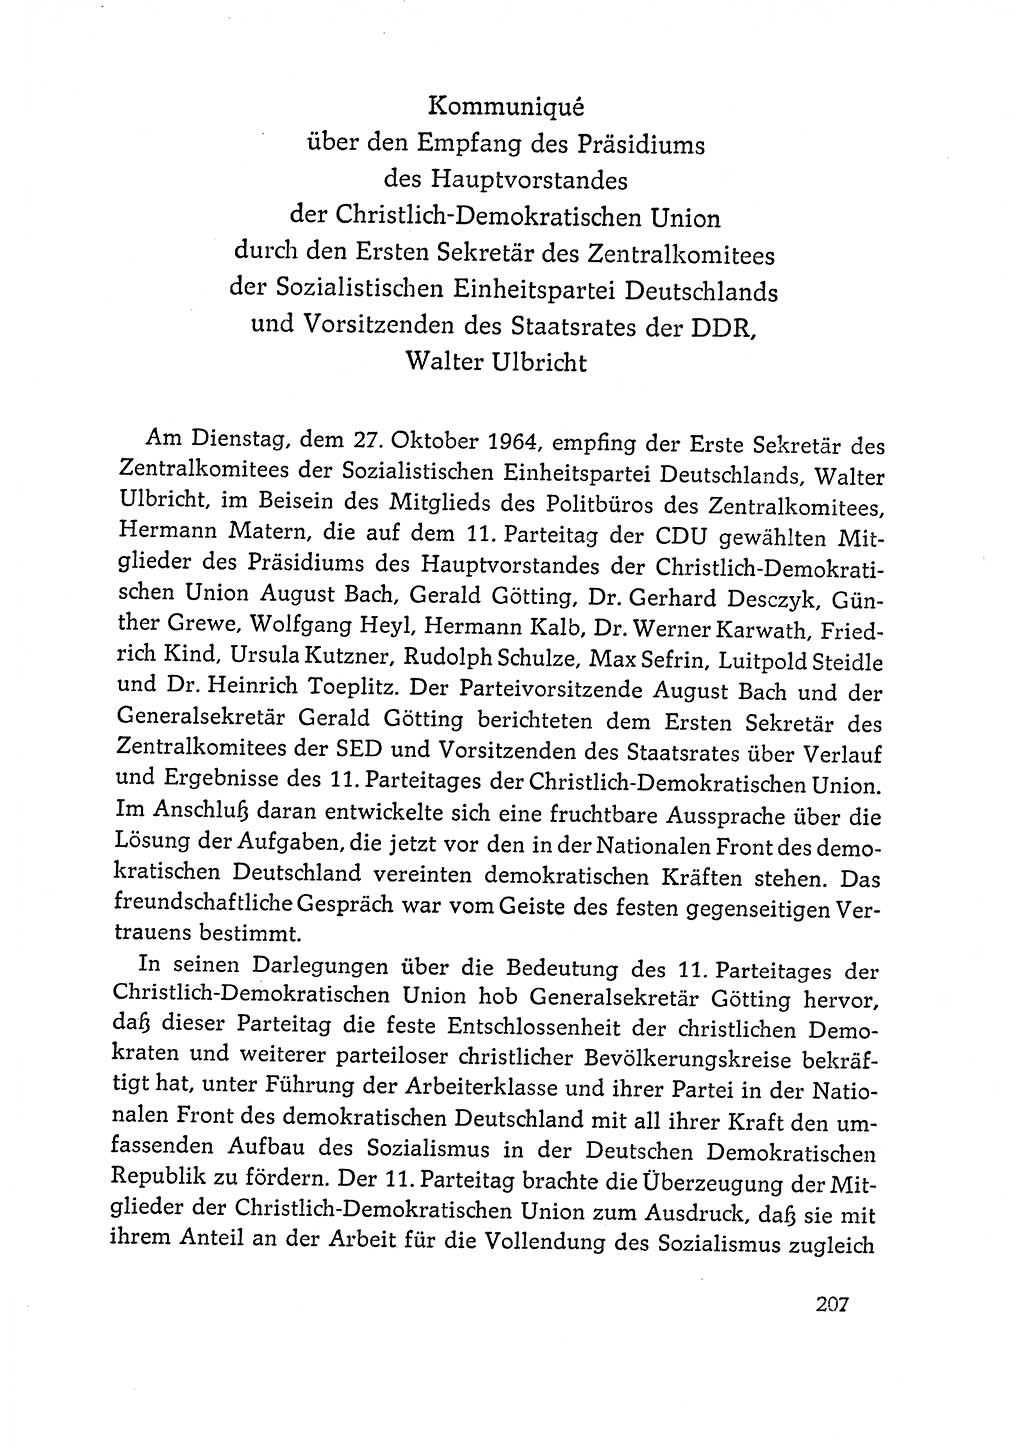 Dokumente der Sozialistischen Einheitspartei Deutschlands (SED) [Deutsche Demokratische Republik (DDR)] 1964-1965, Seite 207 (Dok. SED DDR 1964-1965, S. 207)